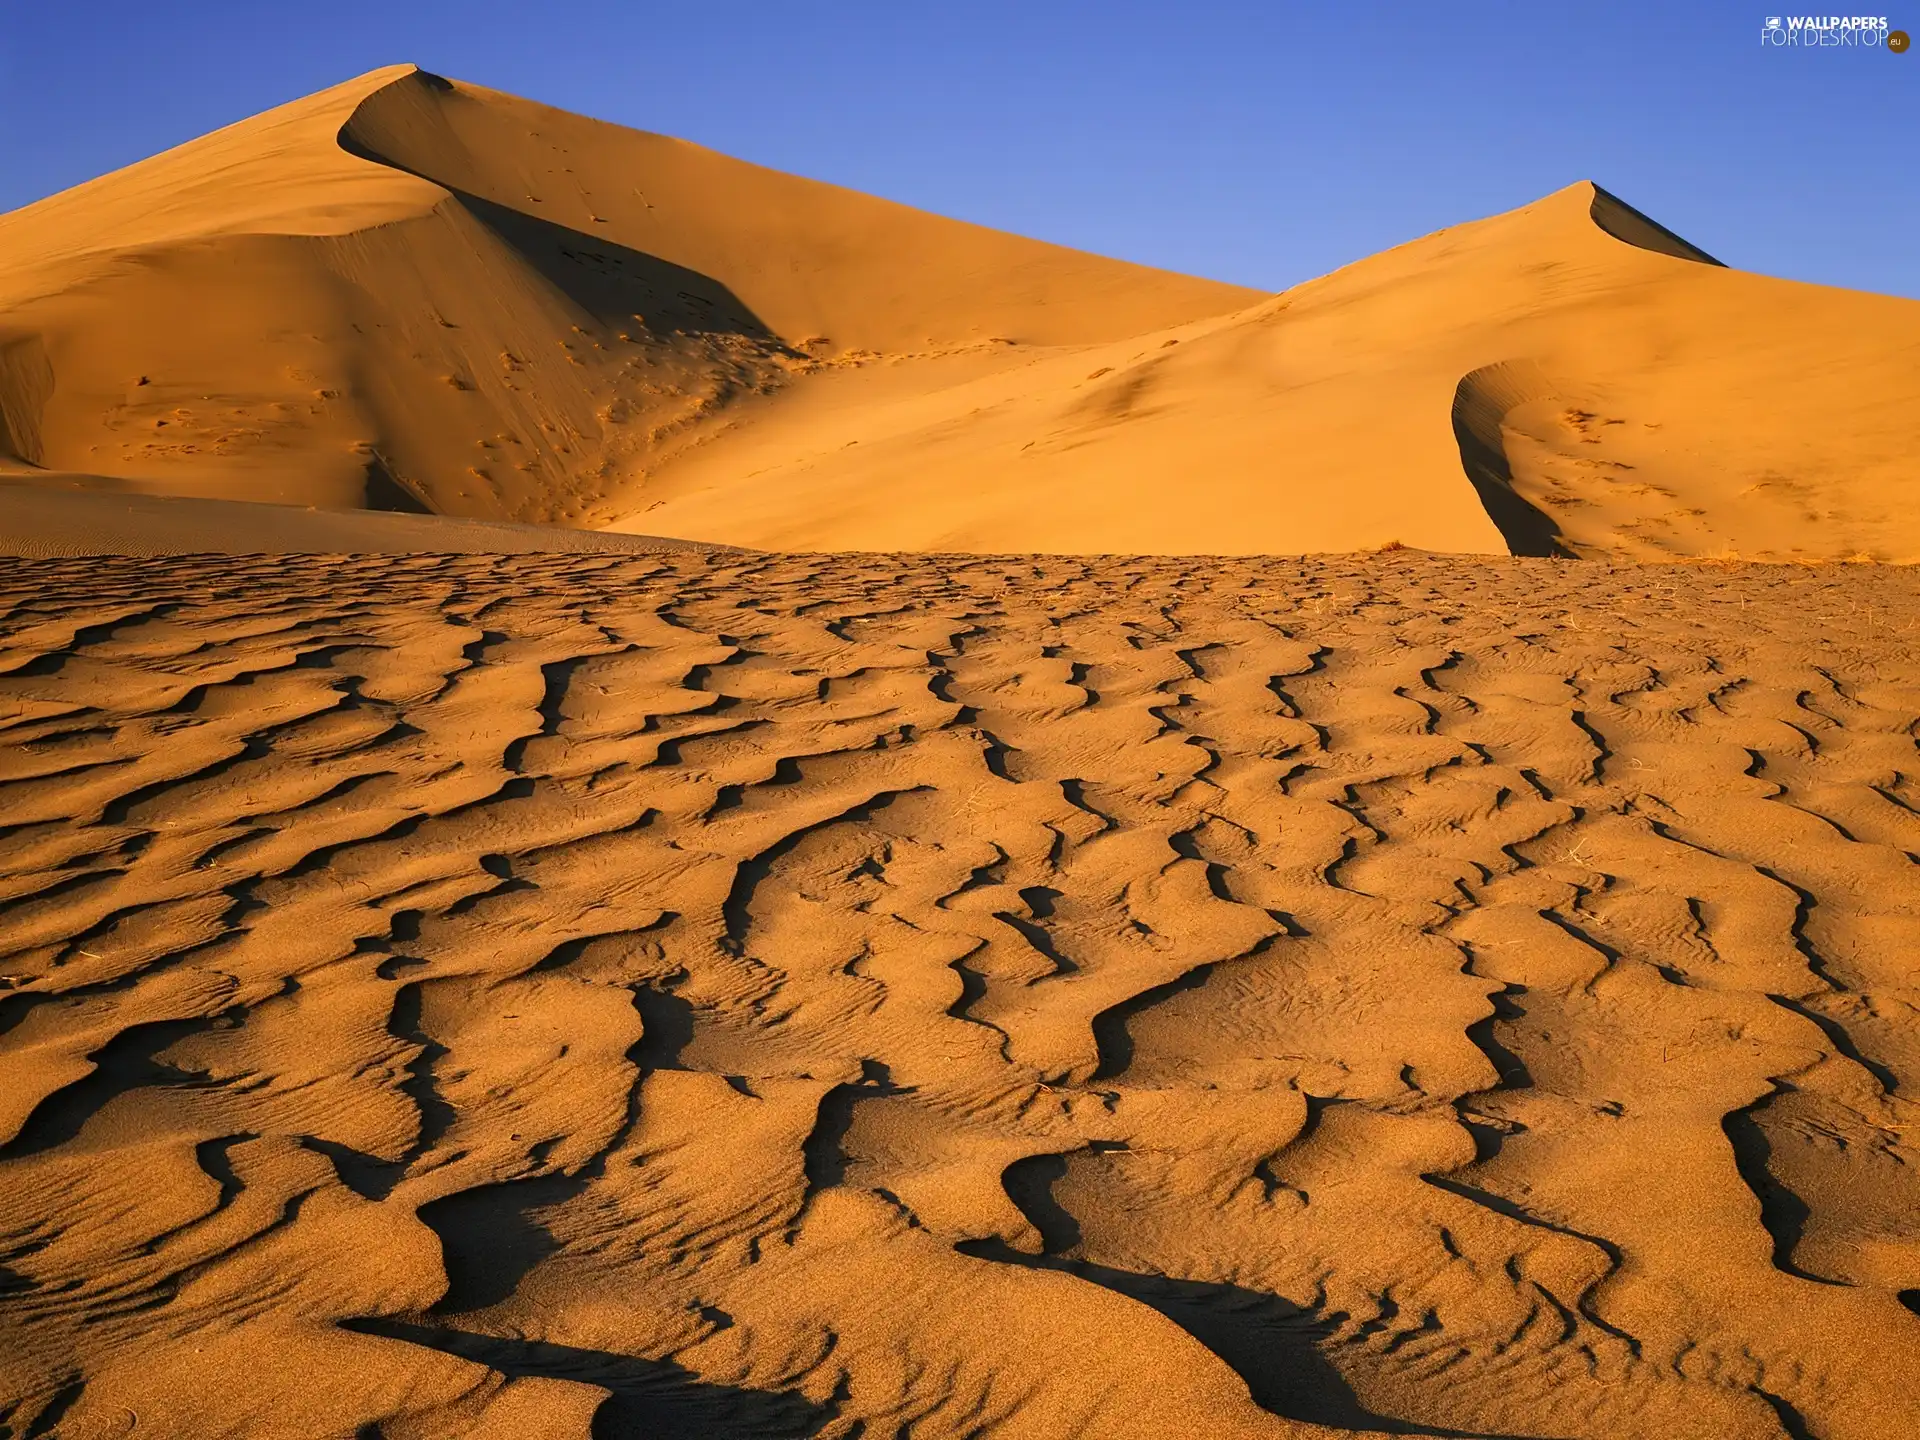 Desert, hot, Dunes, Sand